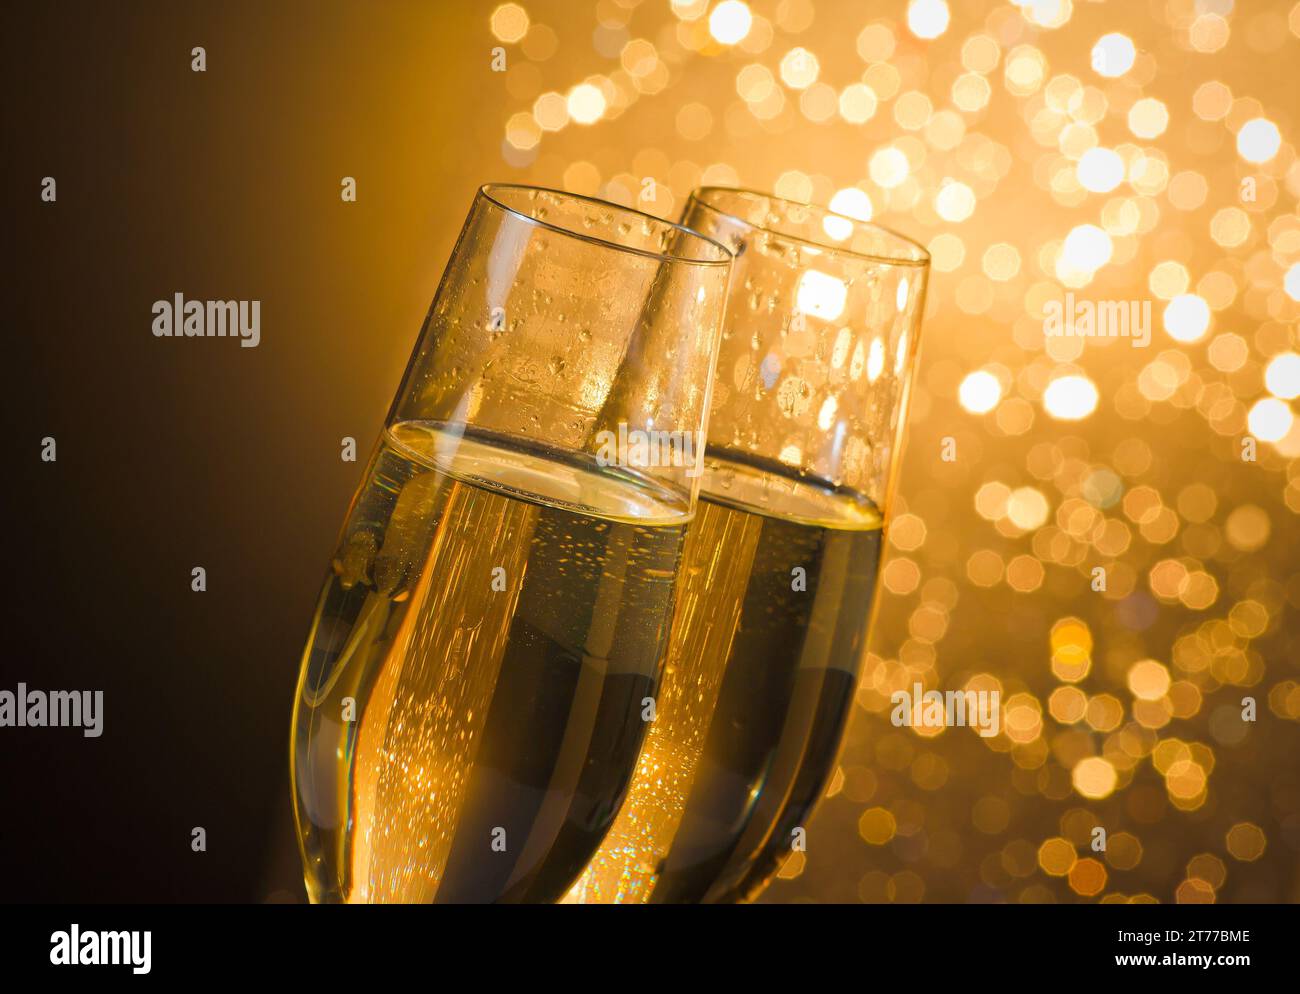 dettaglio di flauti di champagne con bolle dorate su sfondo bokeh chiaro dorato scuro con spazio per il testo Foto Stock